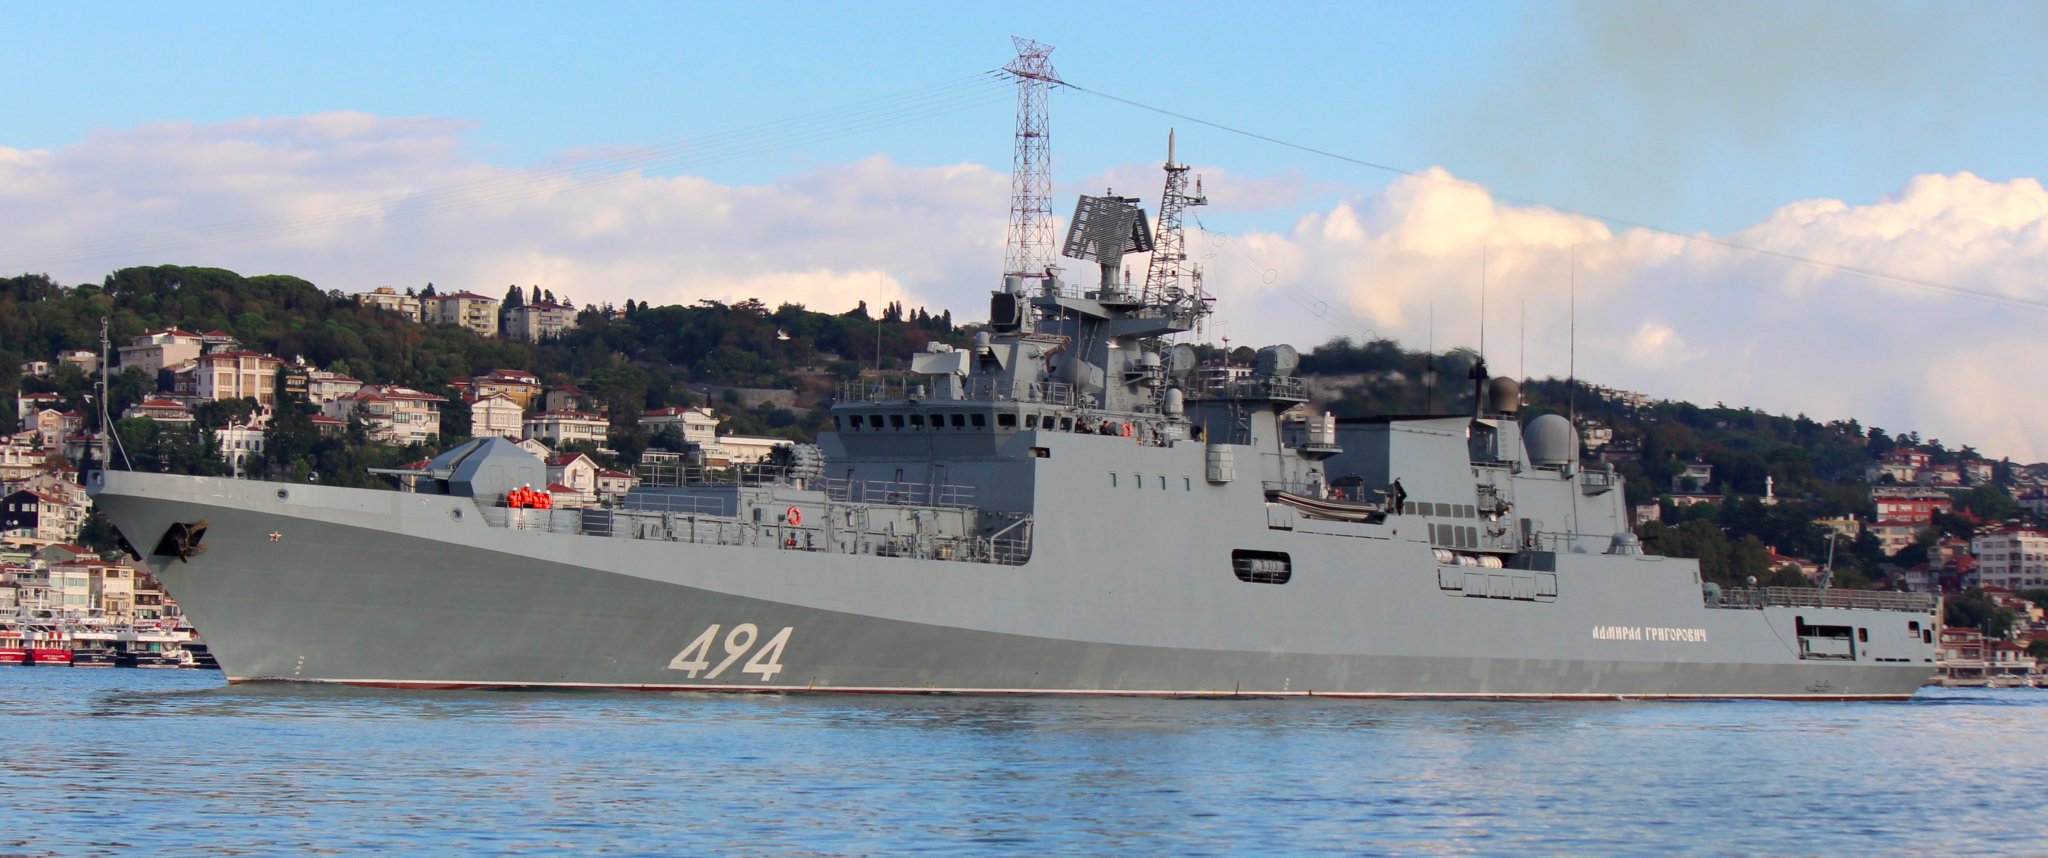 俄罗斯新锐护卫舰通过土海峡